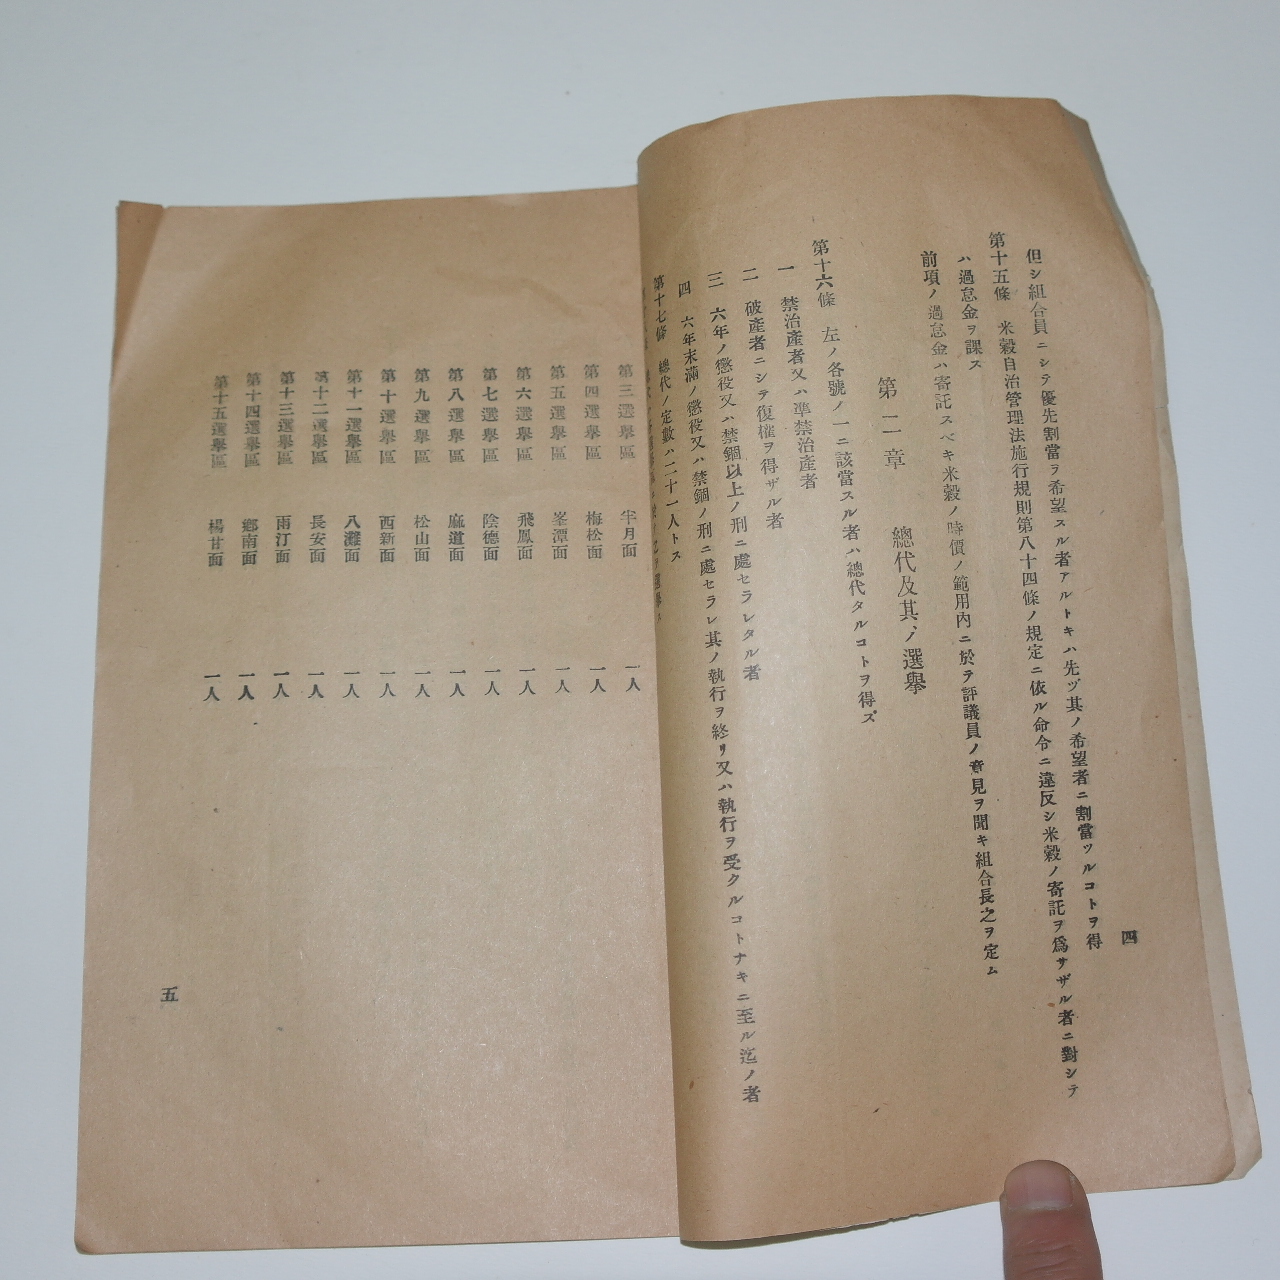 1936년 수원군미곡통제조합정관(水原郡米穀統制組合定款)